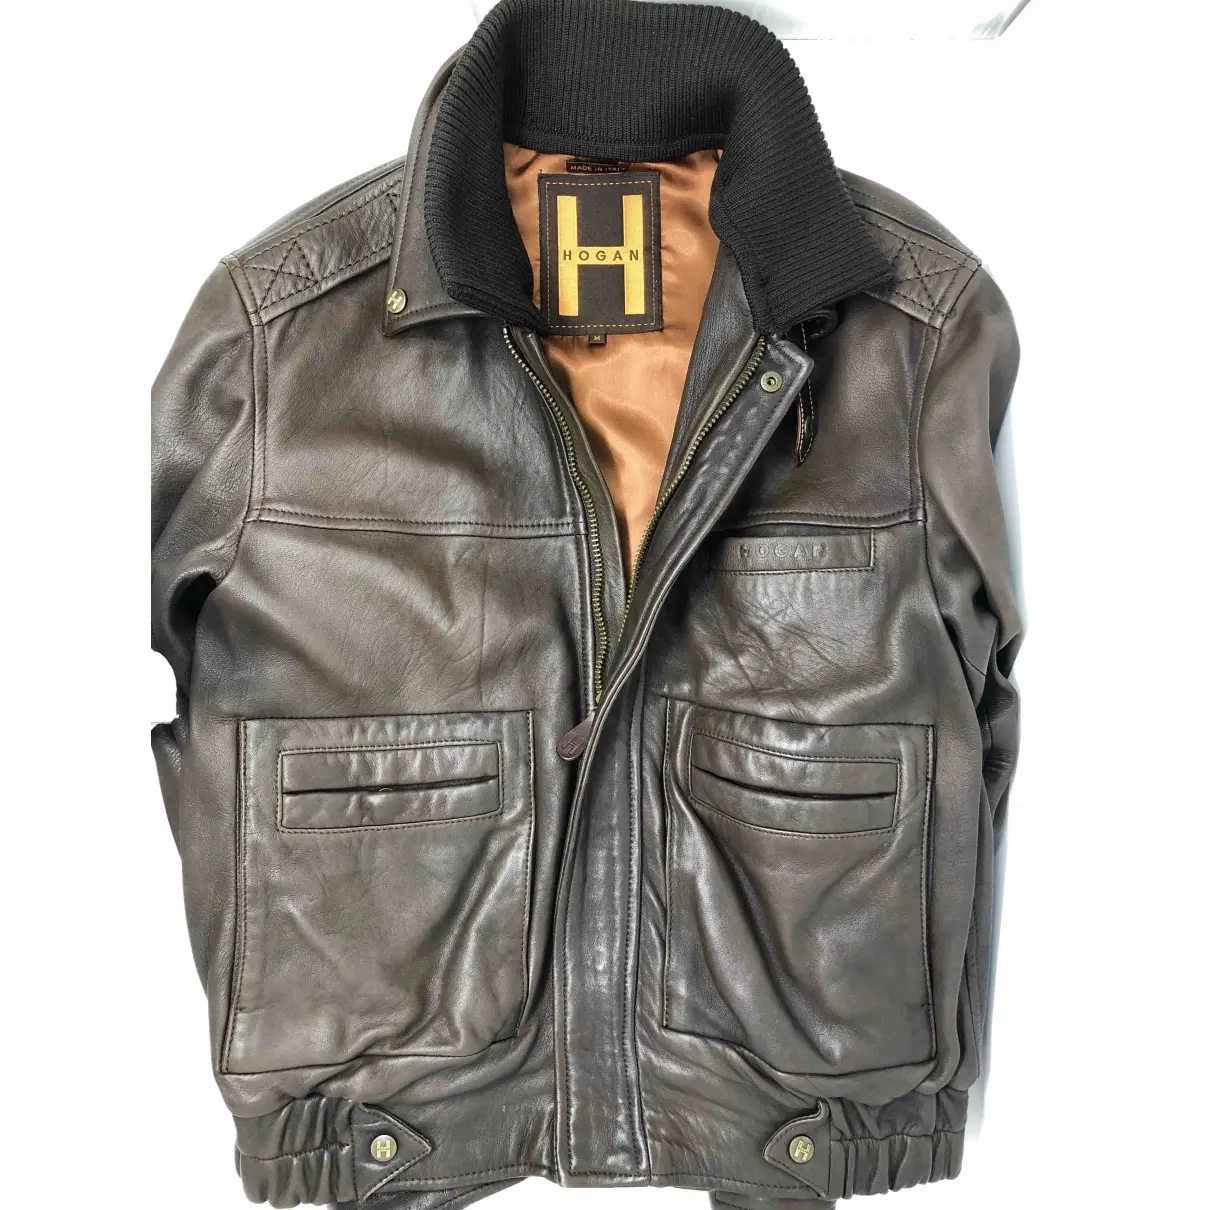 Buy Hogan Leather jacket online - Vintage